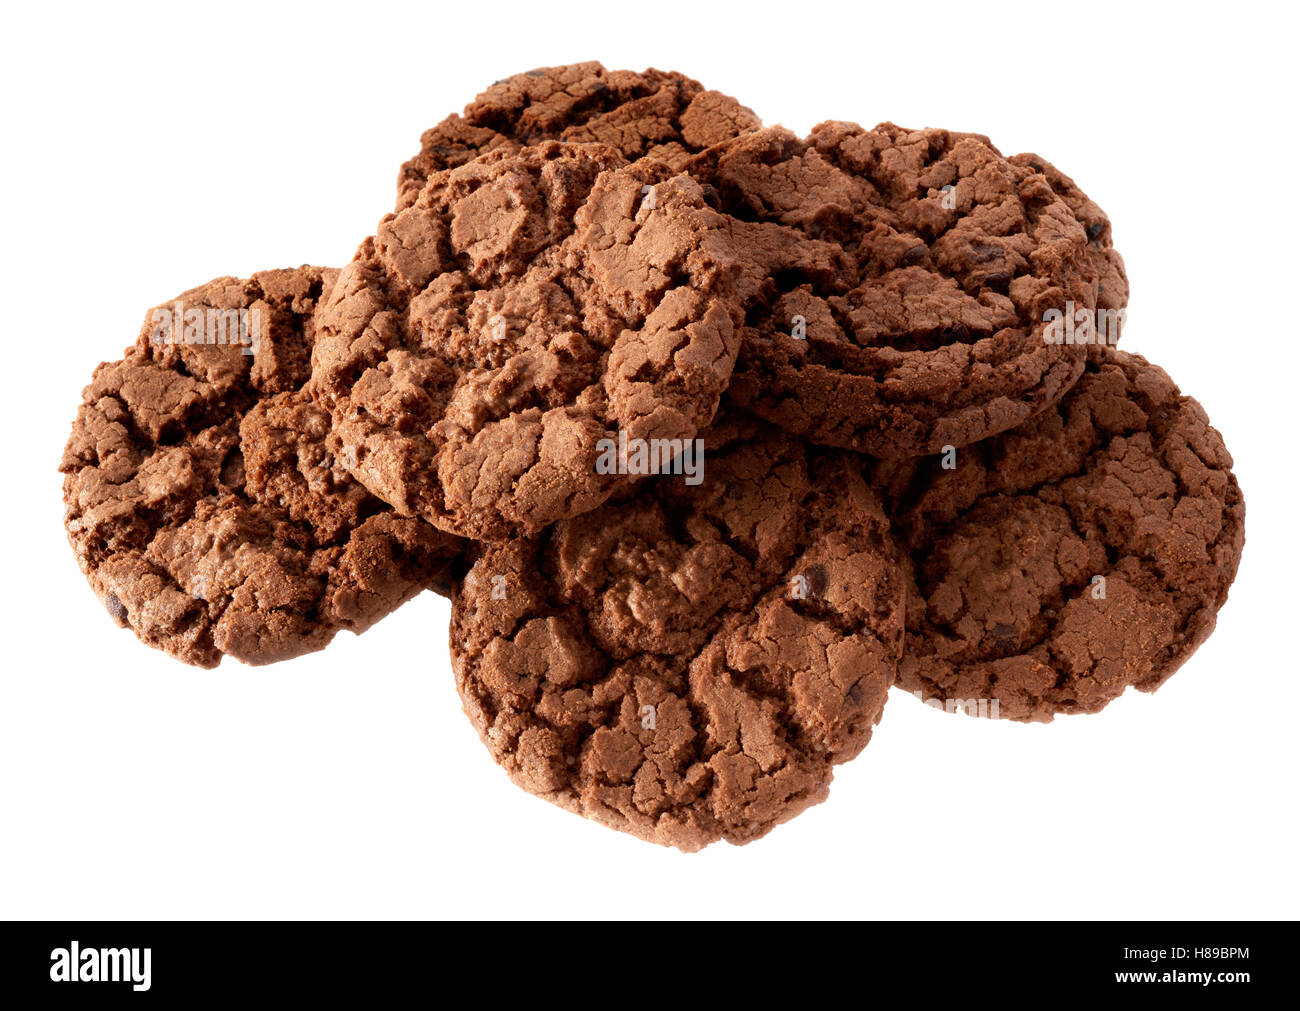 Objets isolés : groupe des cookies au chocolat noir, isolé sur fond blanc Banque D'Images